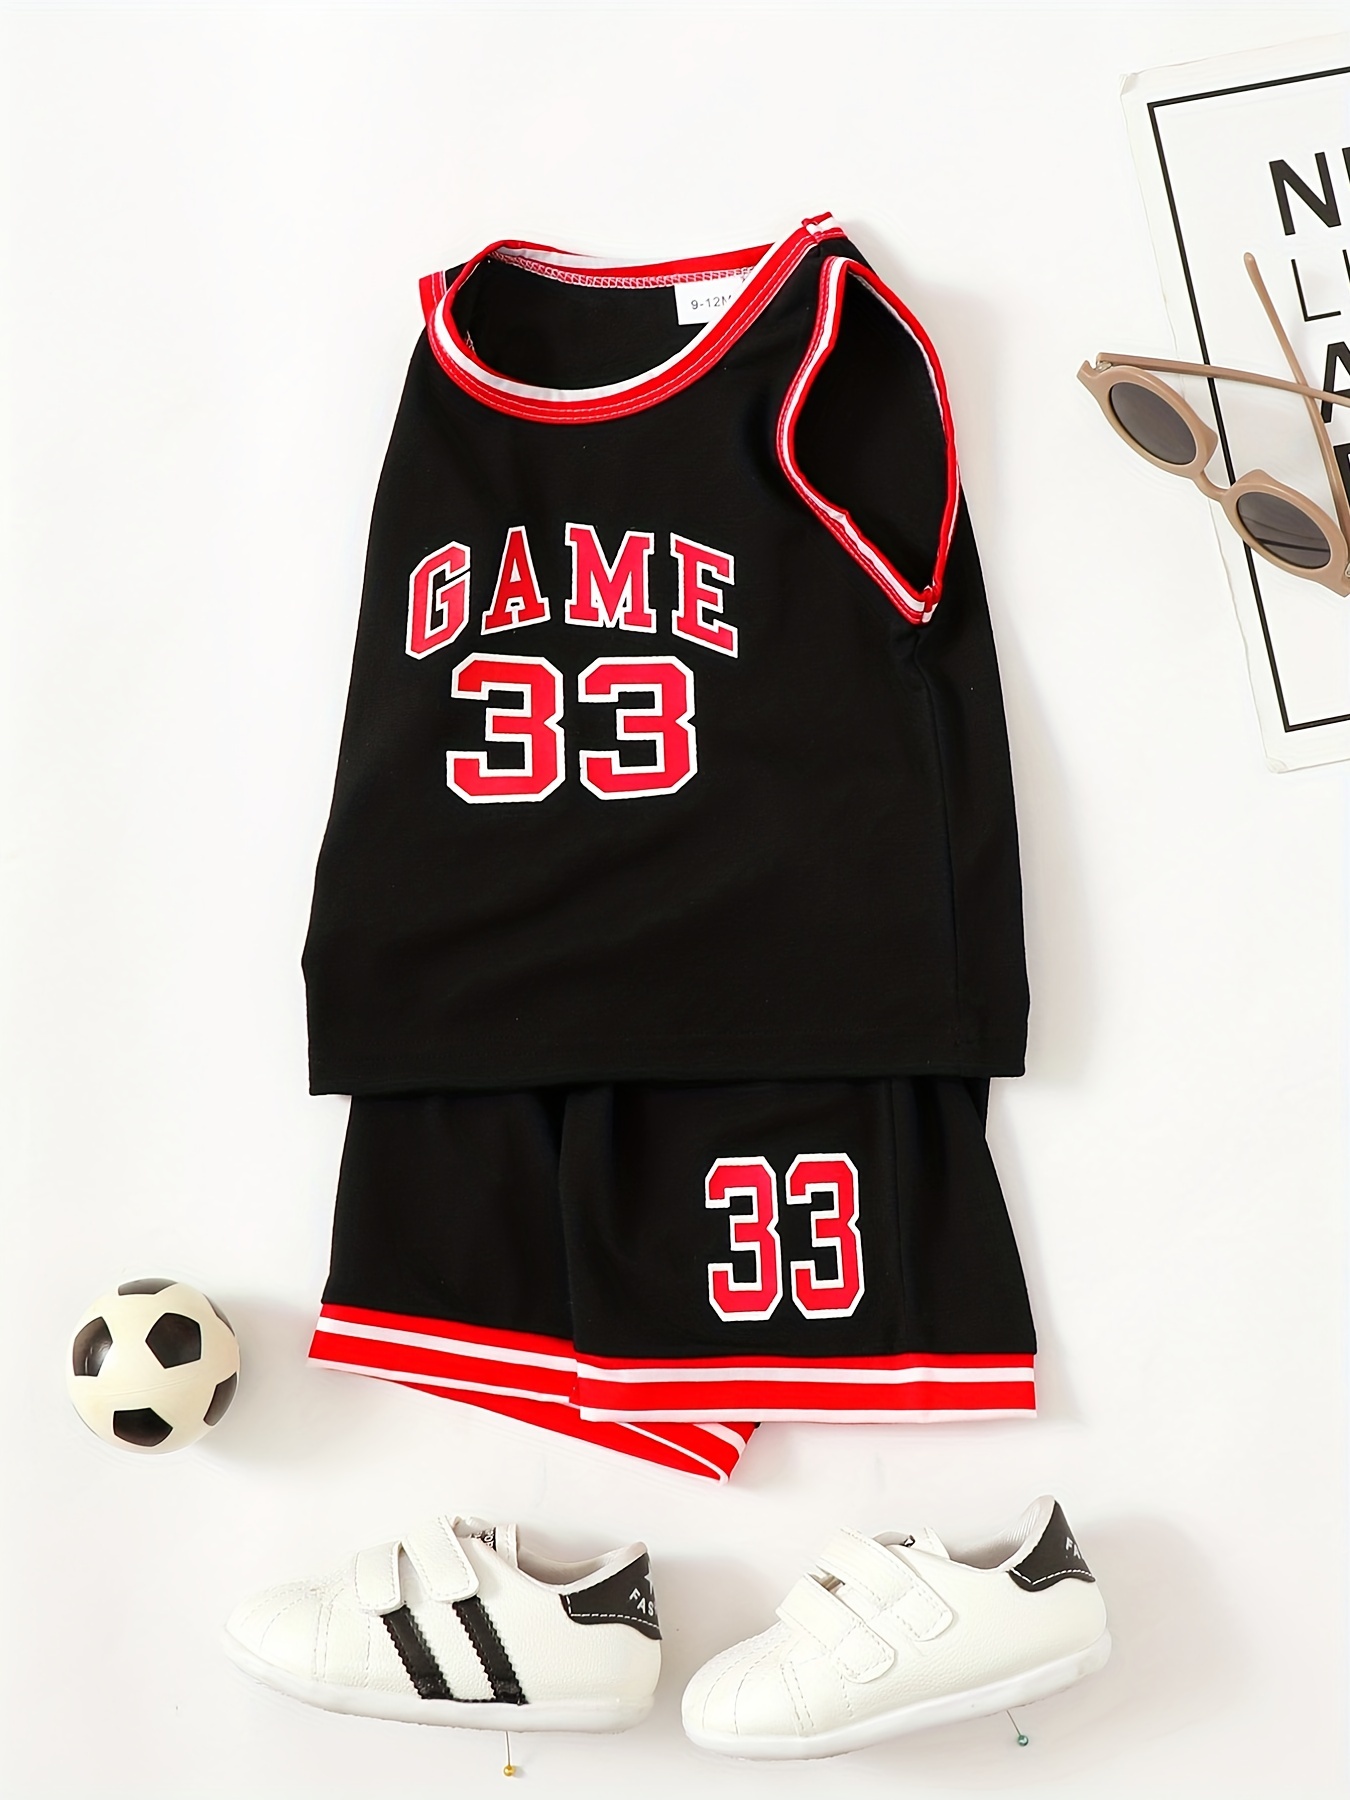 Vêtements de basket-ball costume maillot compétition équipe uniforme femmes  été formation sport gilet à la mode enfants basket-ball vêtements ensemble